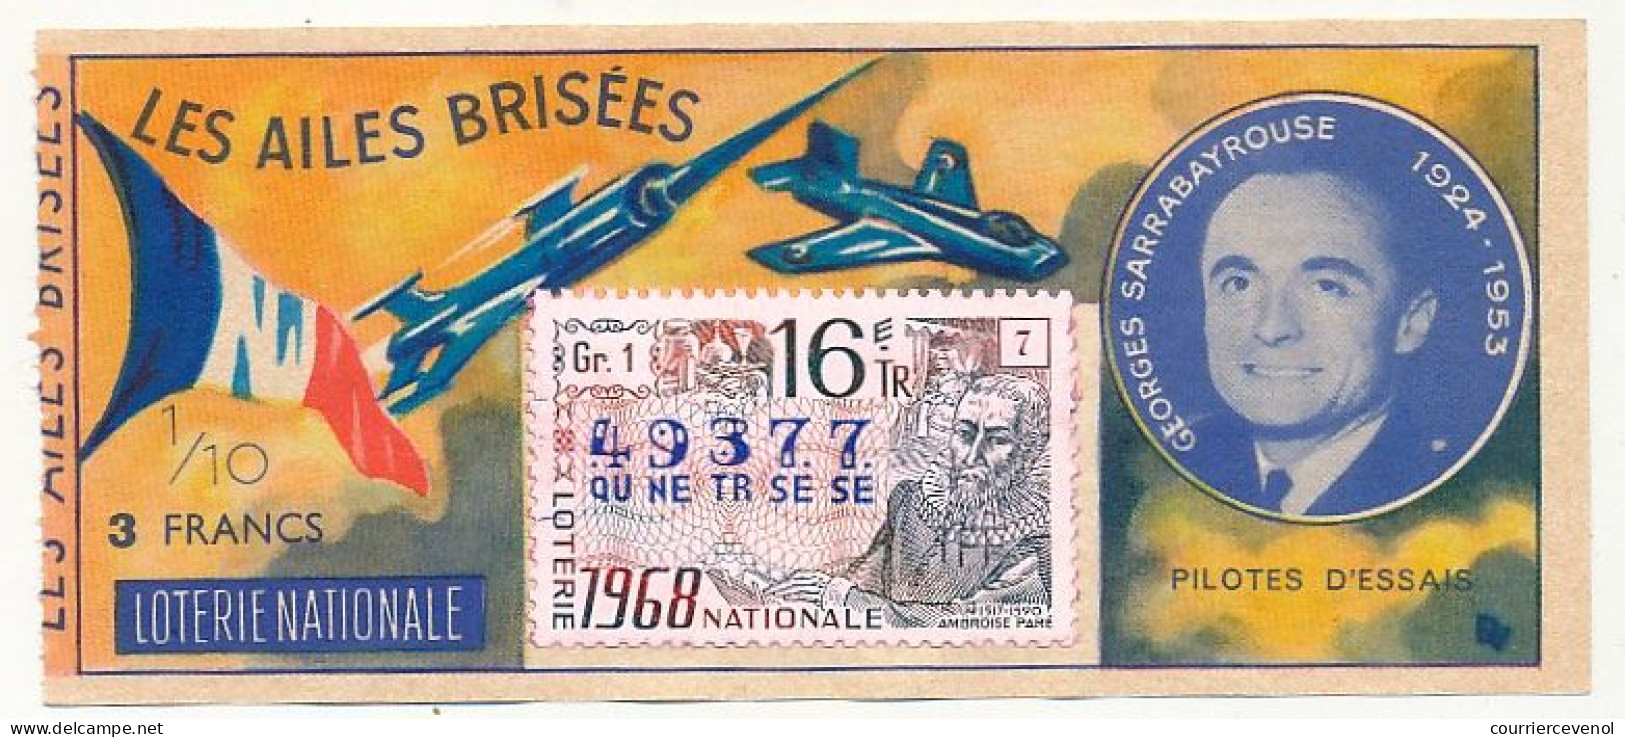 FRANCE - Loterie Nationale - 1/10ème - Les Ailes Brisées - Pilotes D'essais - Georges Sarrabayrouse - 16èm Tr 1968 - Billetes De Lotería